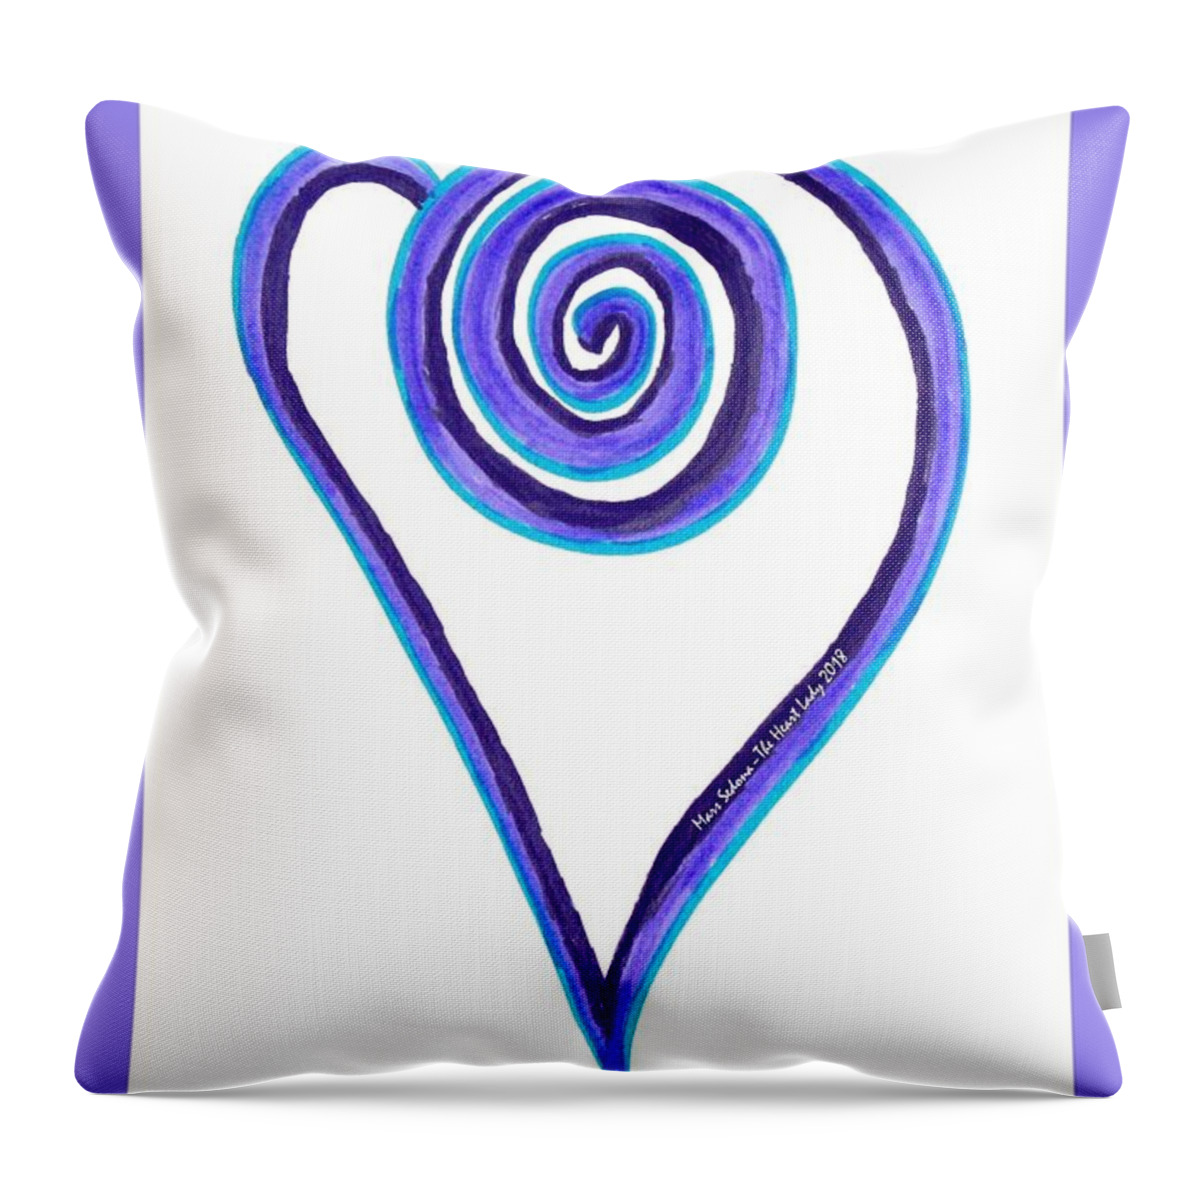 Heart Throw Pillow featuring the photograph Zen Heart Off Balance by Mars Besso